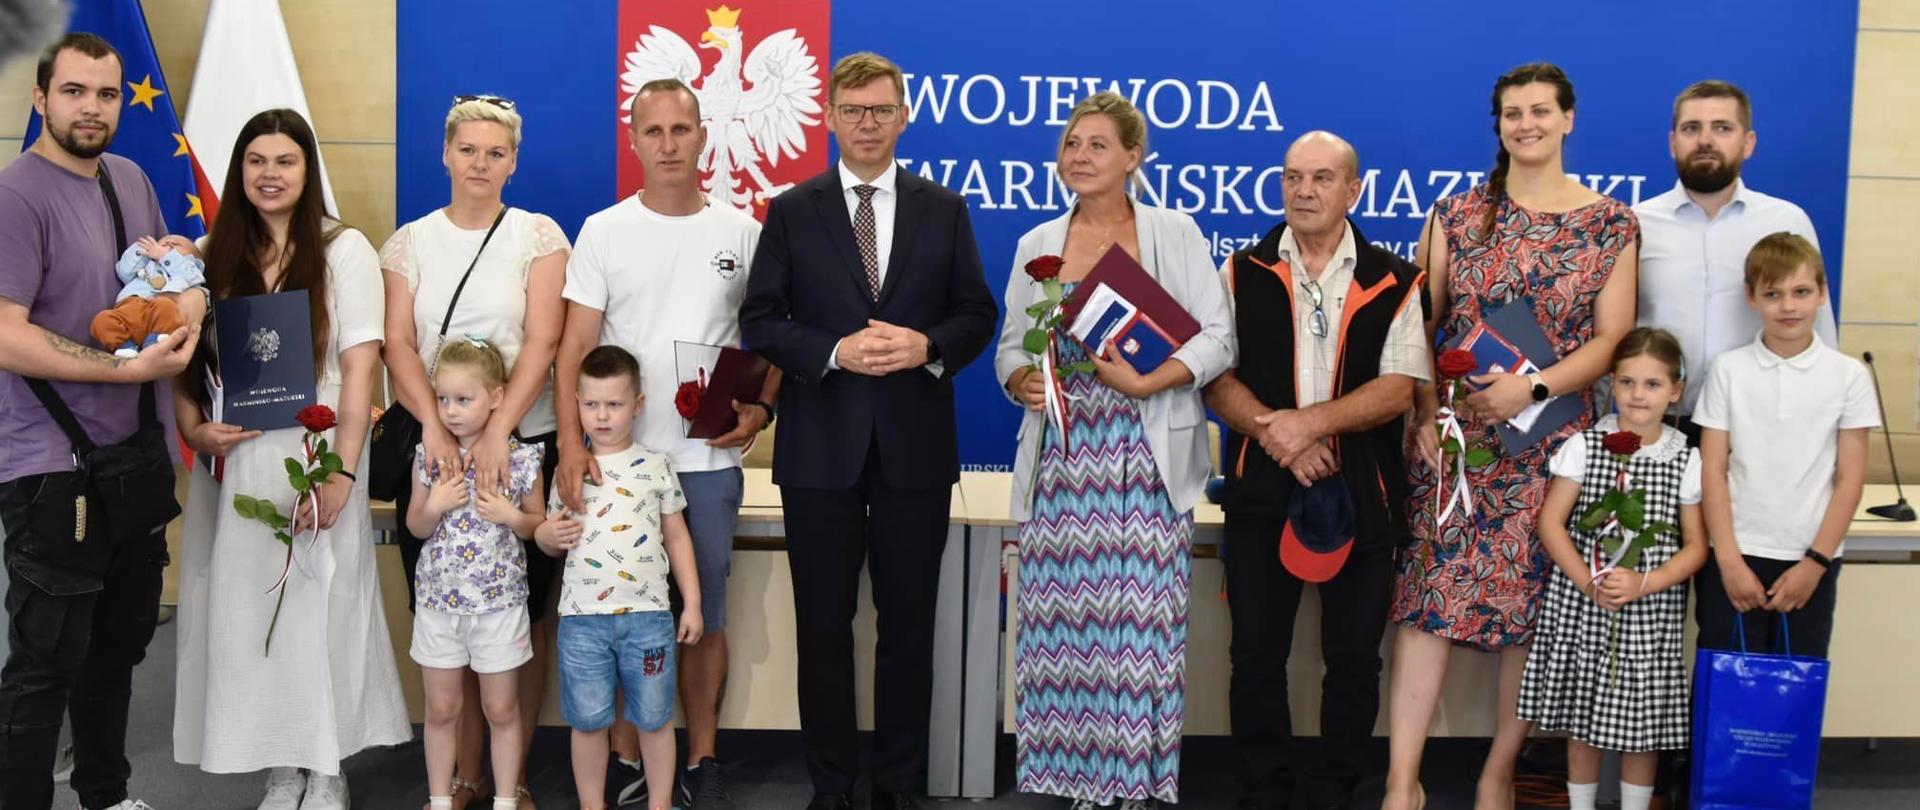 Wojewoda Artur Chojecki z nowymi polskimi obywatelami 